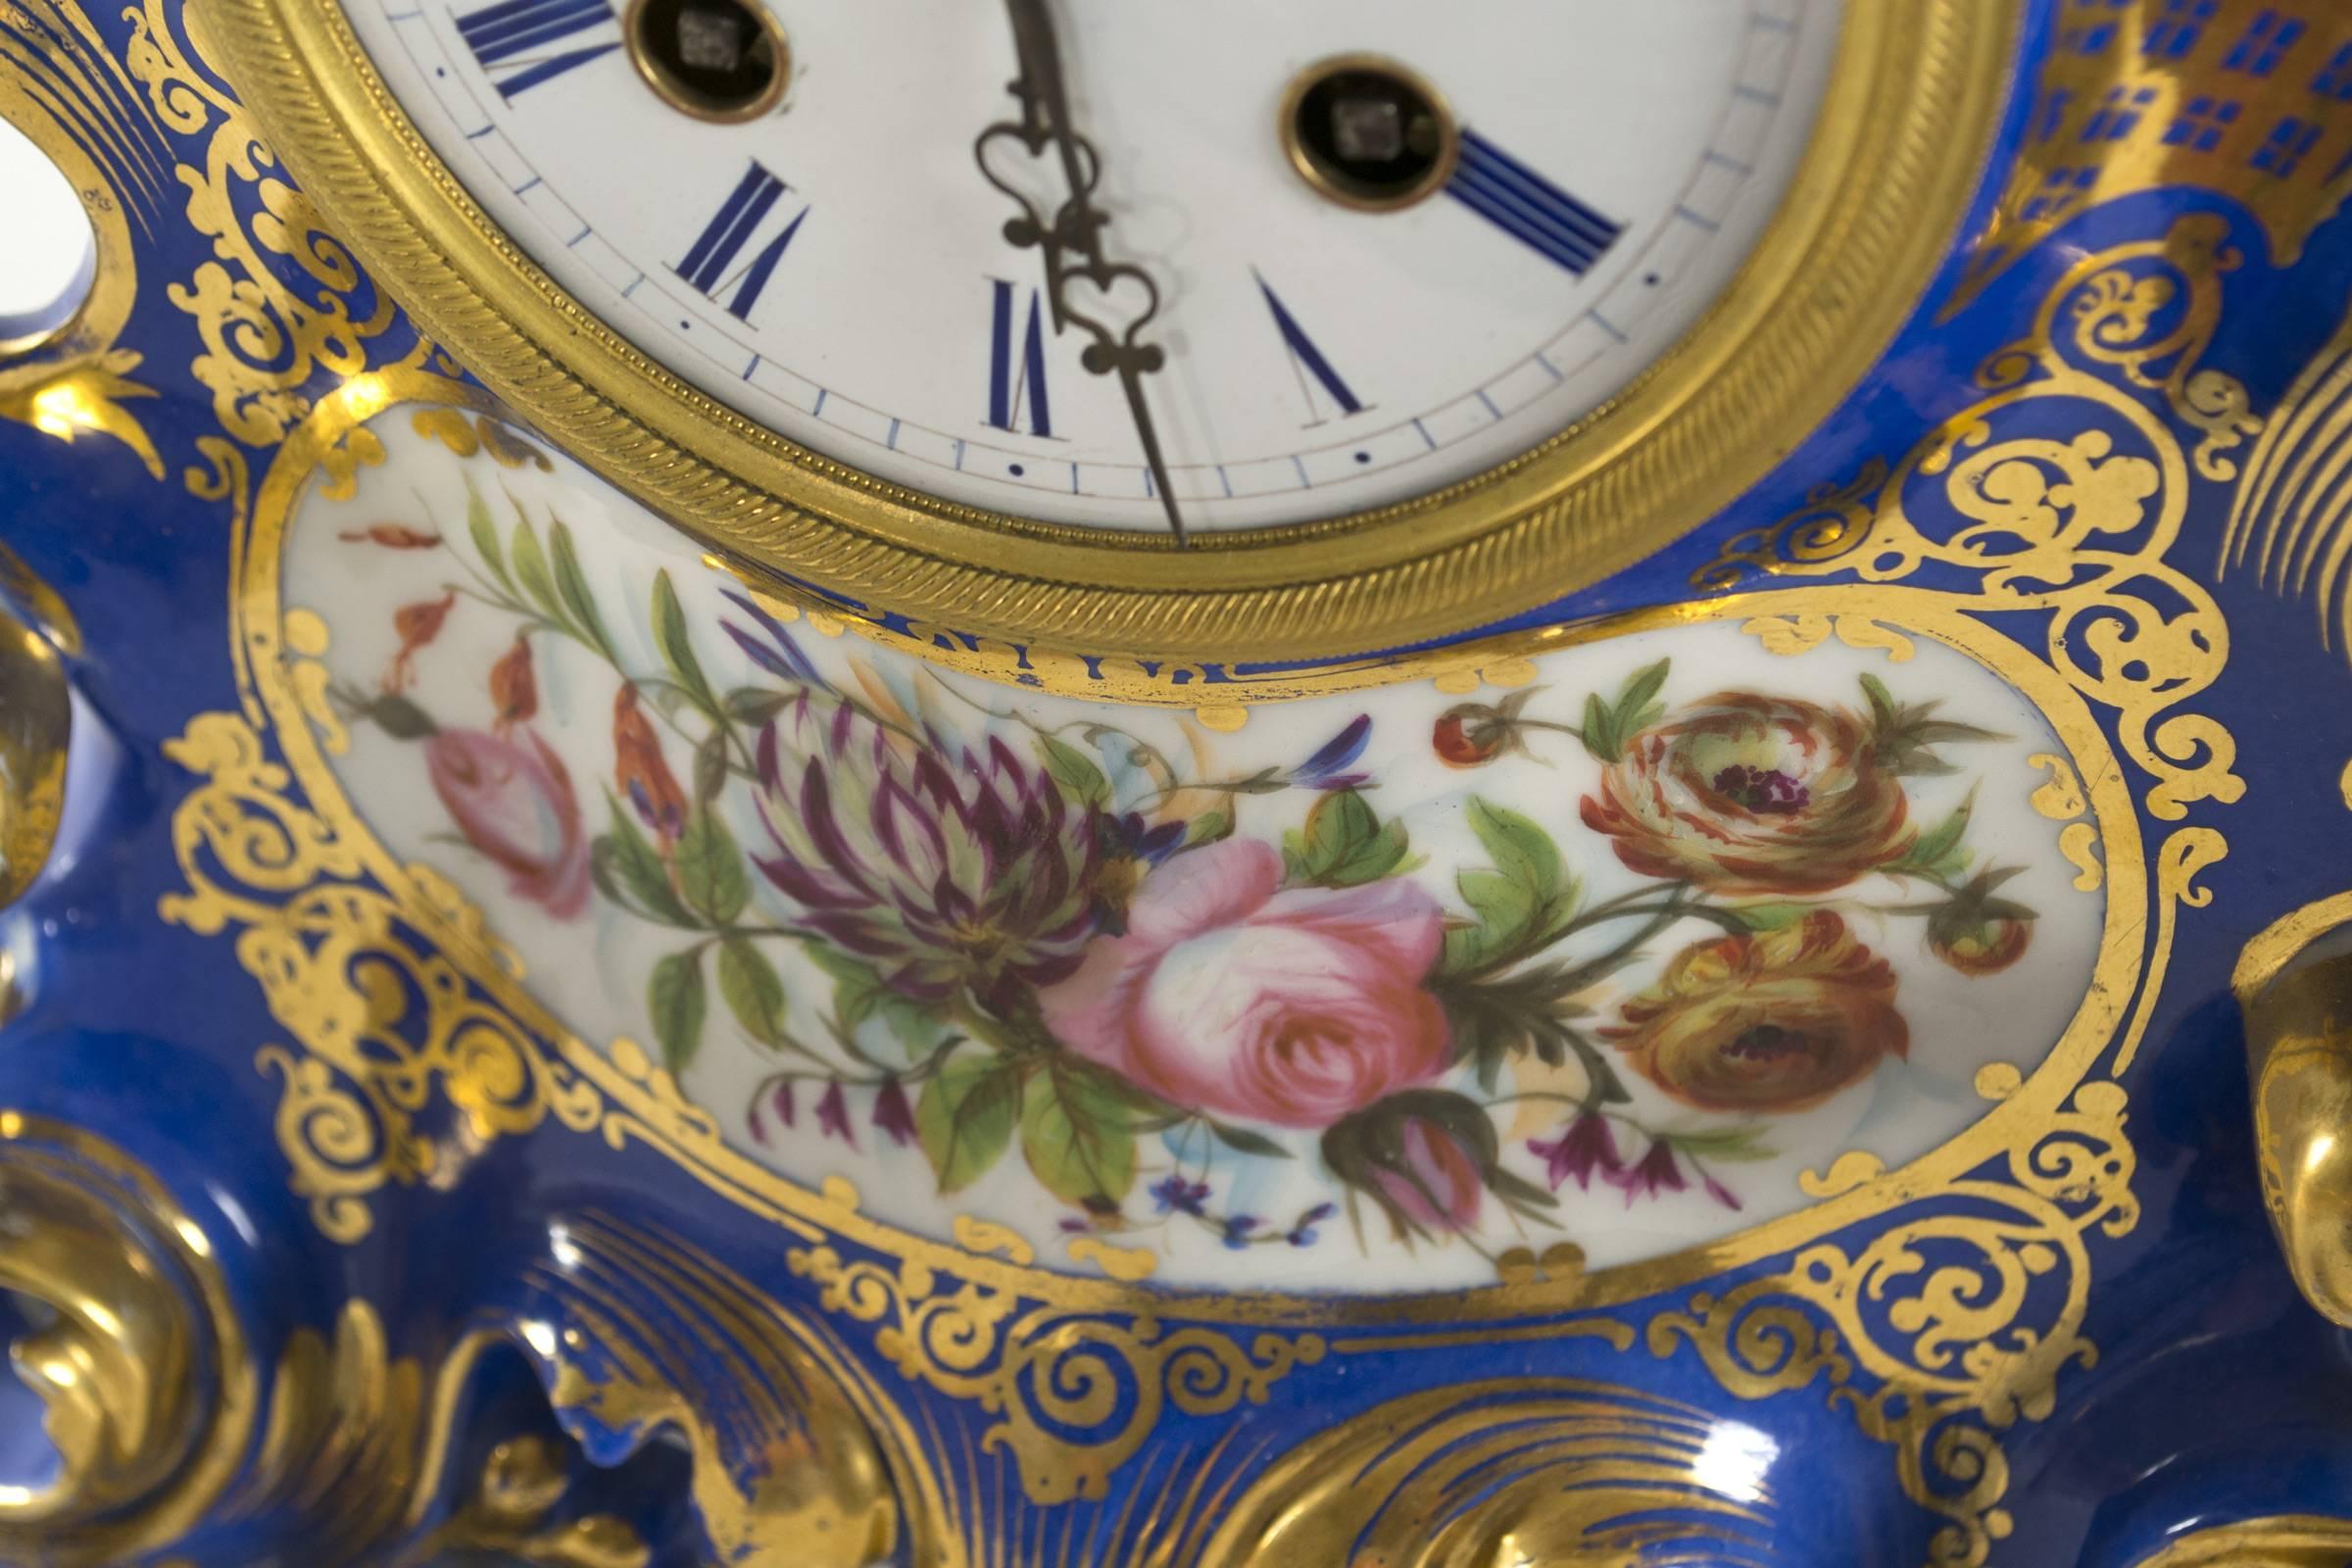 French Old Paris Porcelain Mantel Clock